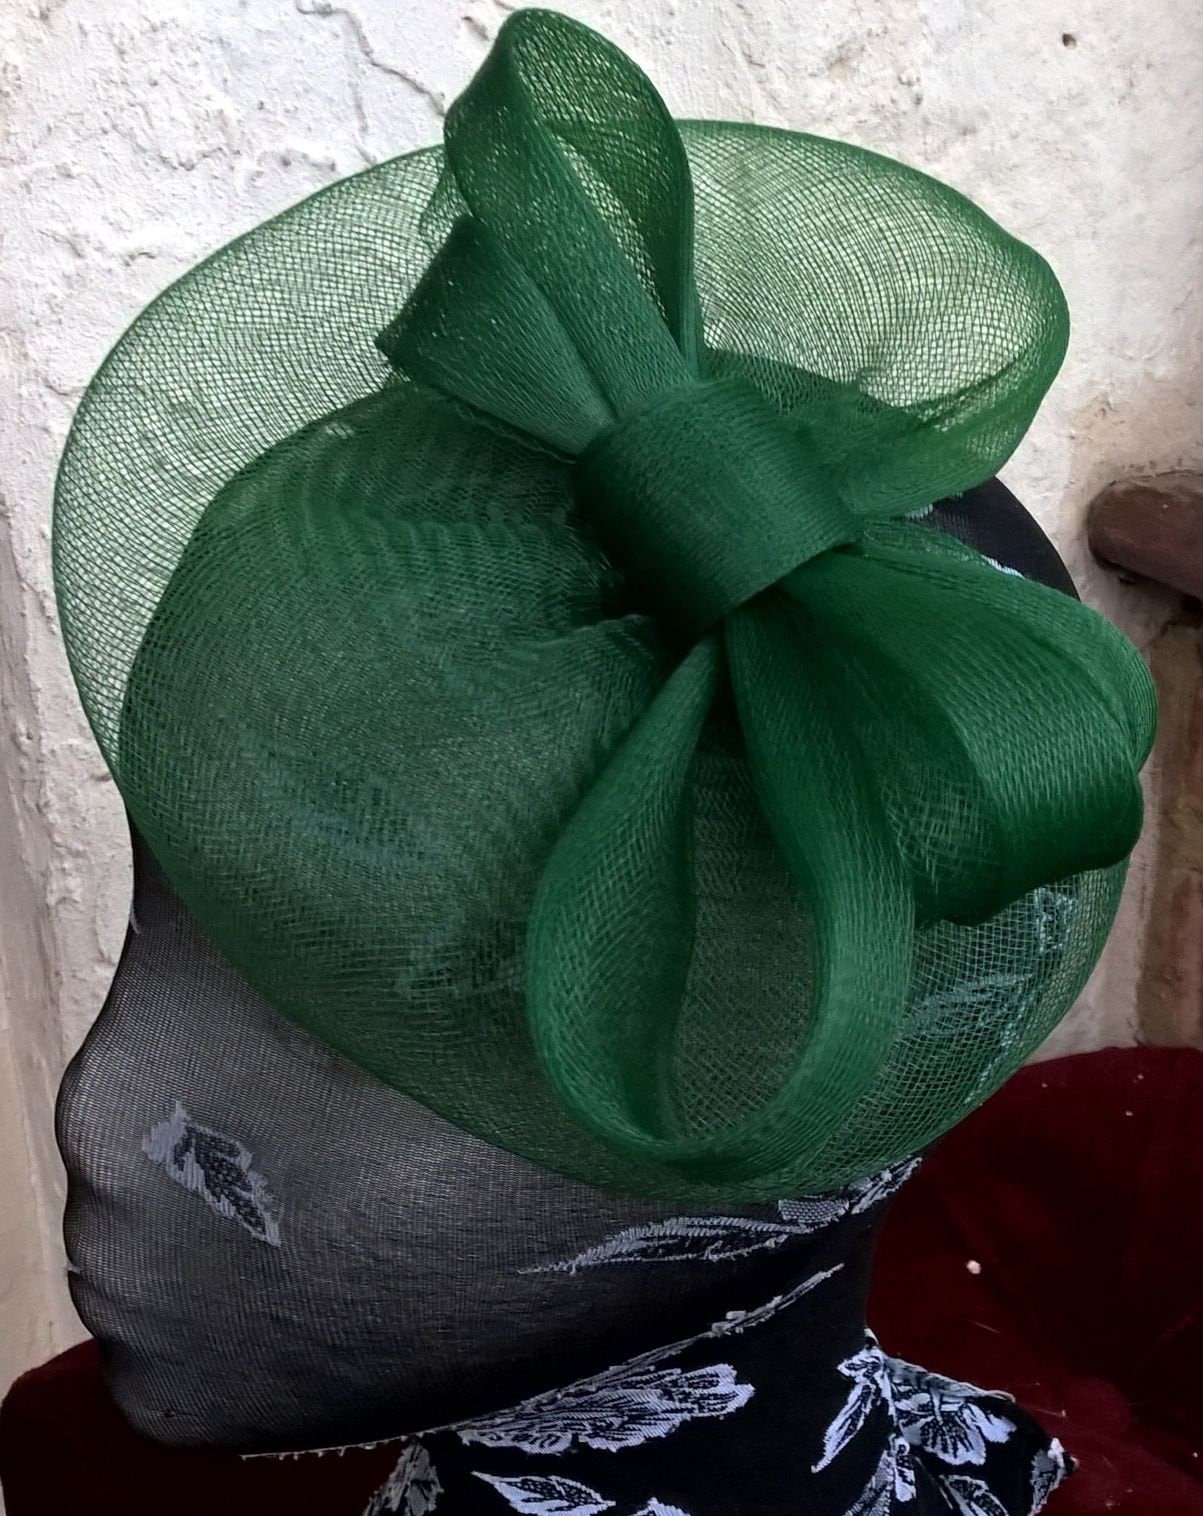 comfort Voorbijganger Turbine green feather fascinator millinery burlesque headband wedding hat hair piece